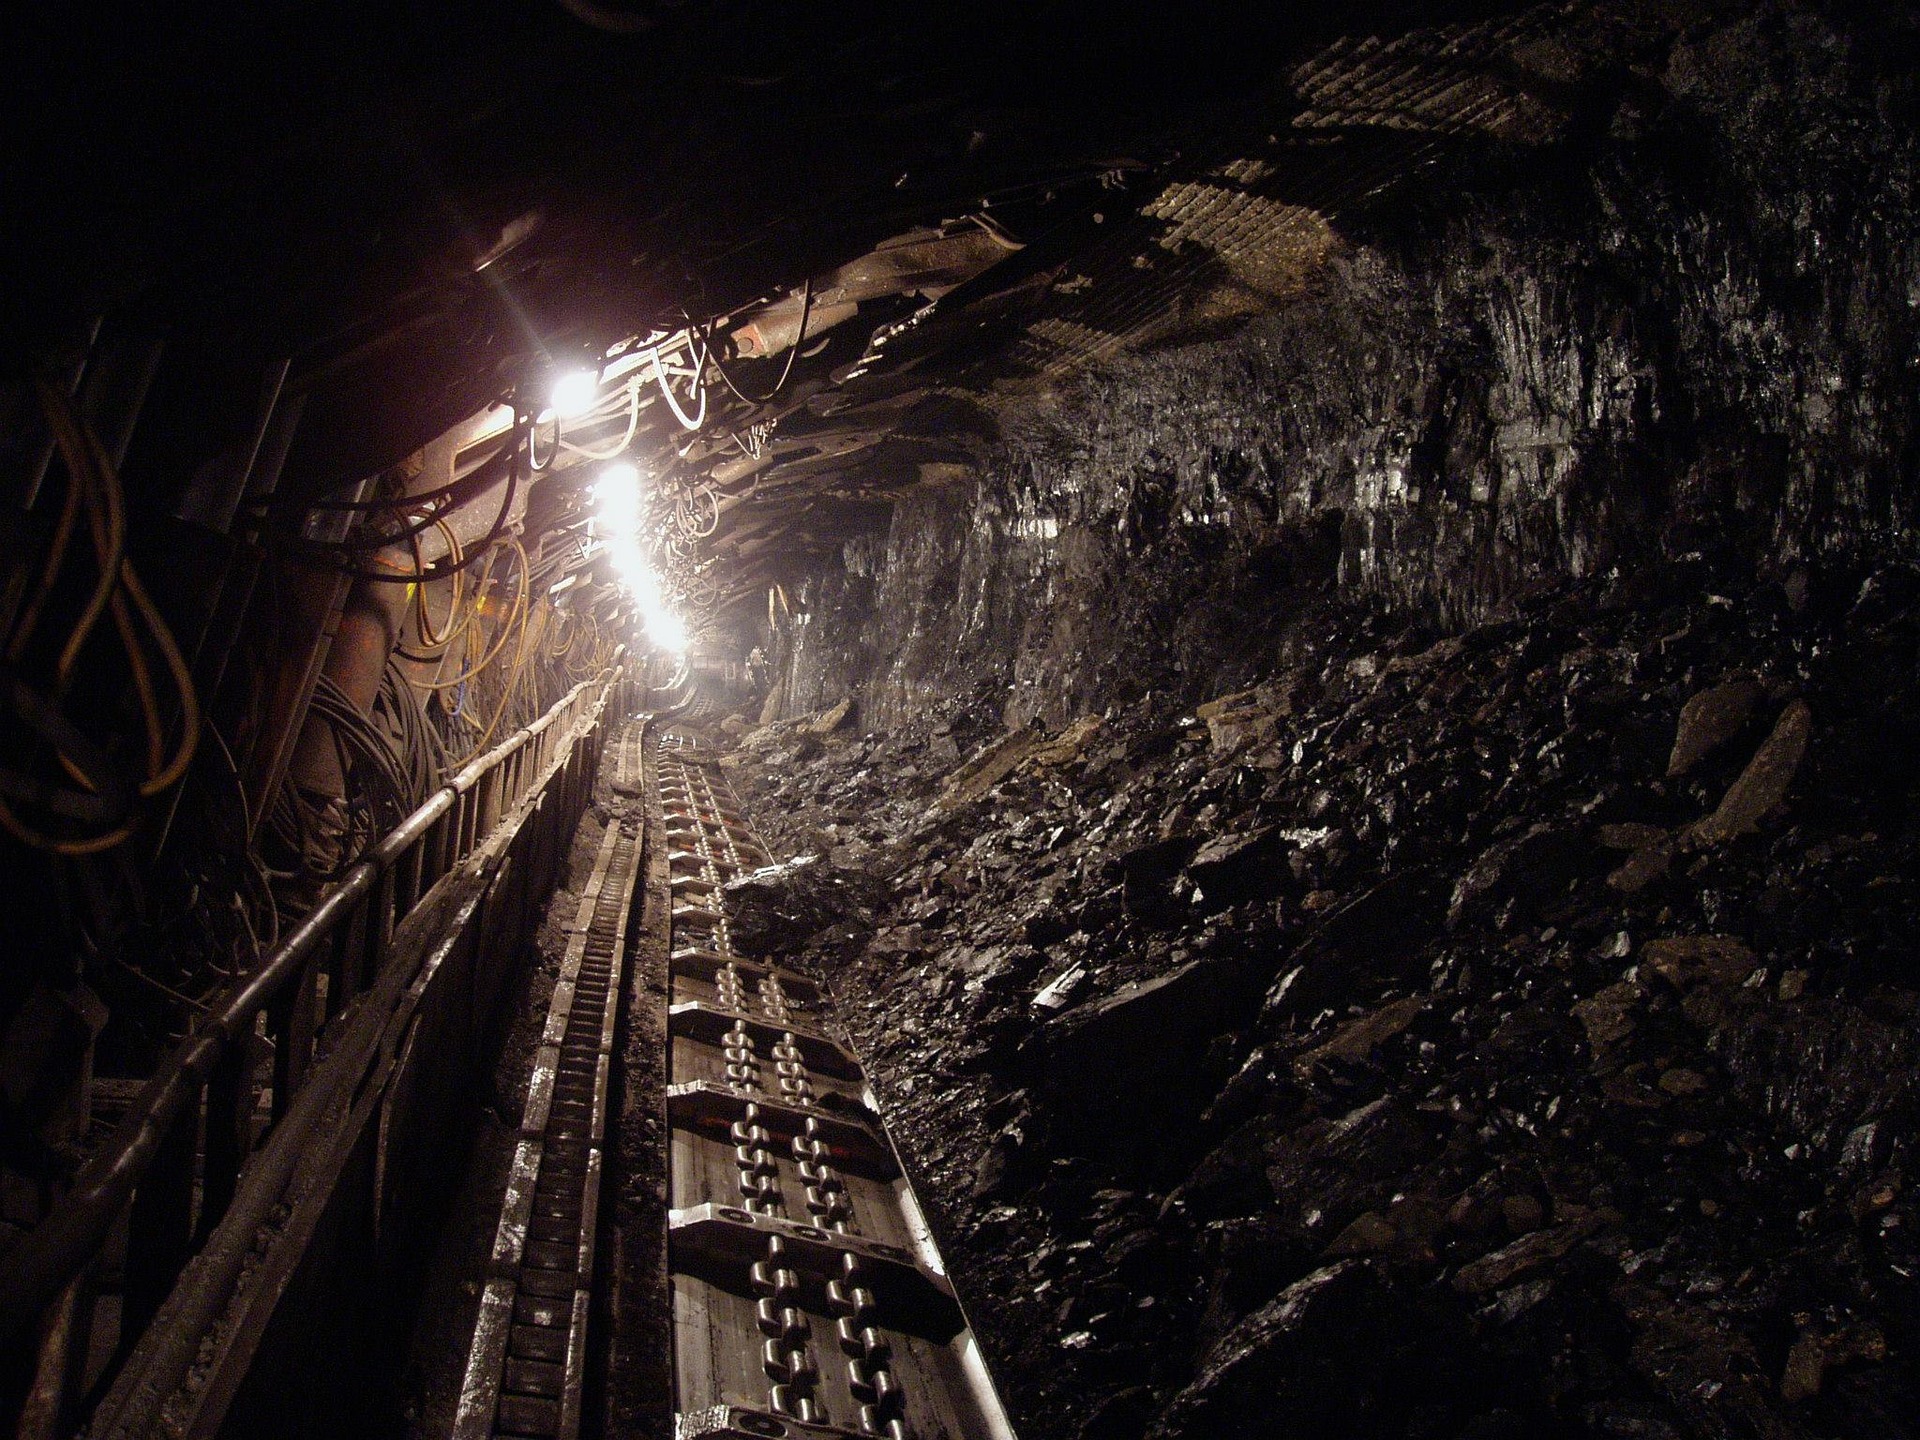 米国株の「炭鉱のカナリア」は引き続き警戒モードを示唆